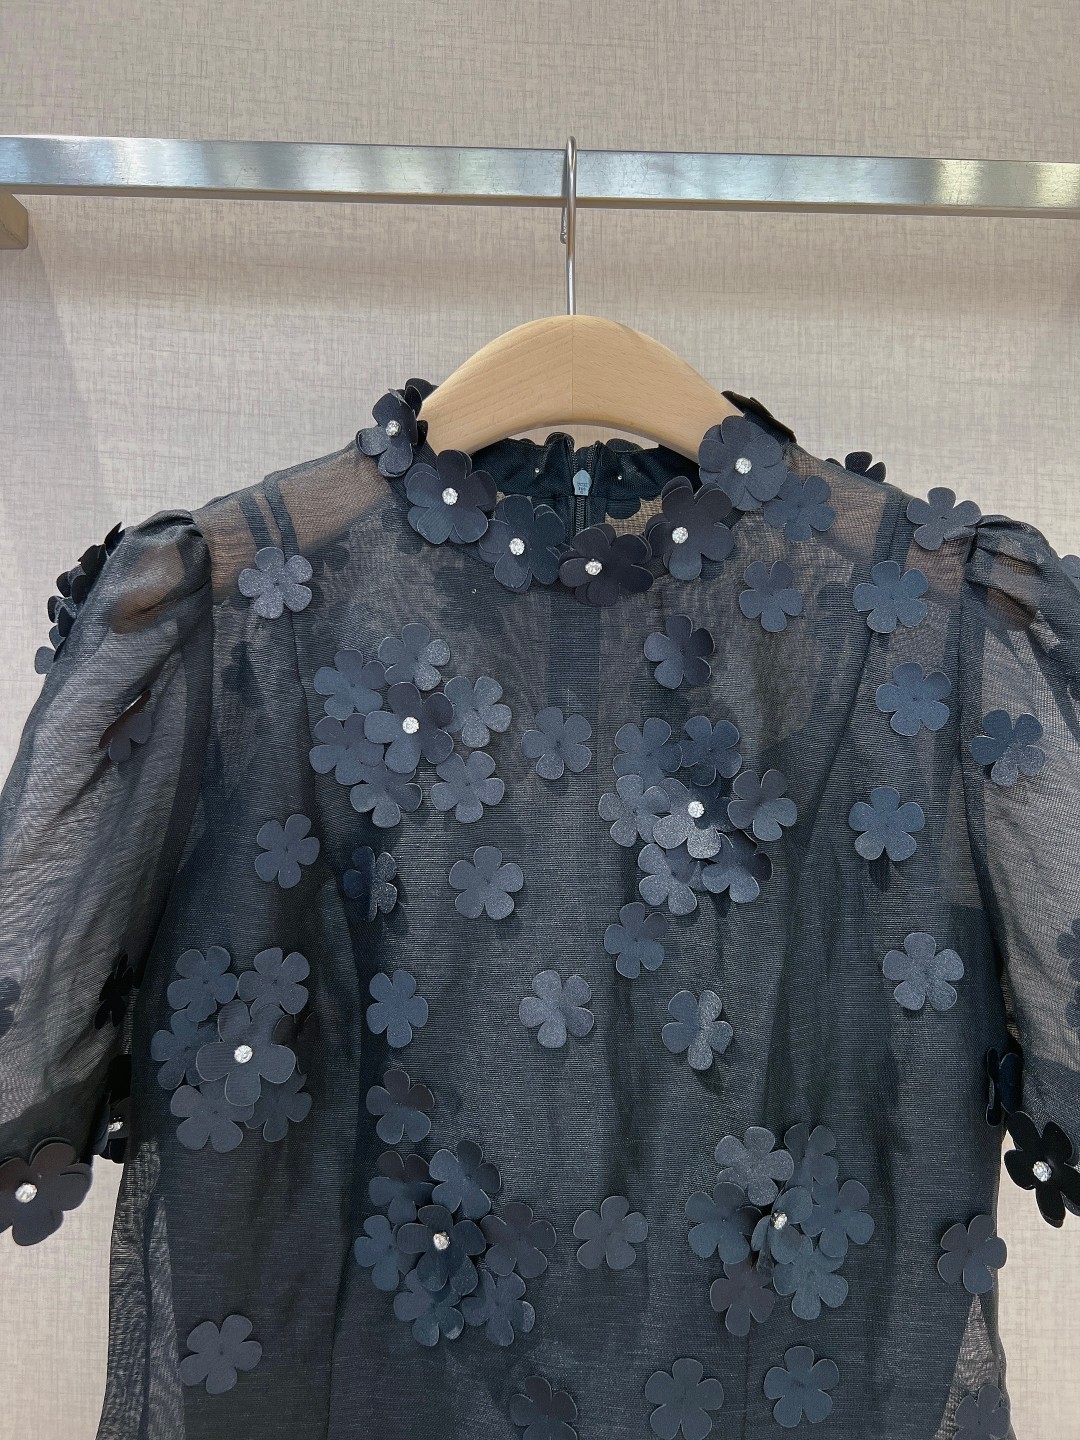 澳洲设计师品牌Zimmerman*n新品丝麻料质地材质上衣饰有精致的3D花朵贴花后背采用隐形拉链设计前后